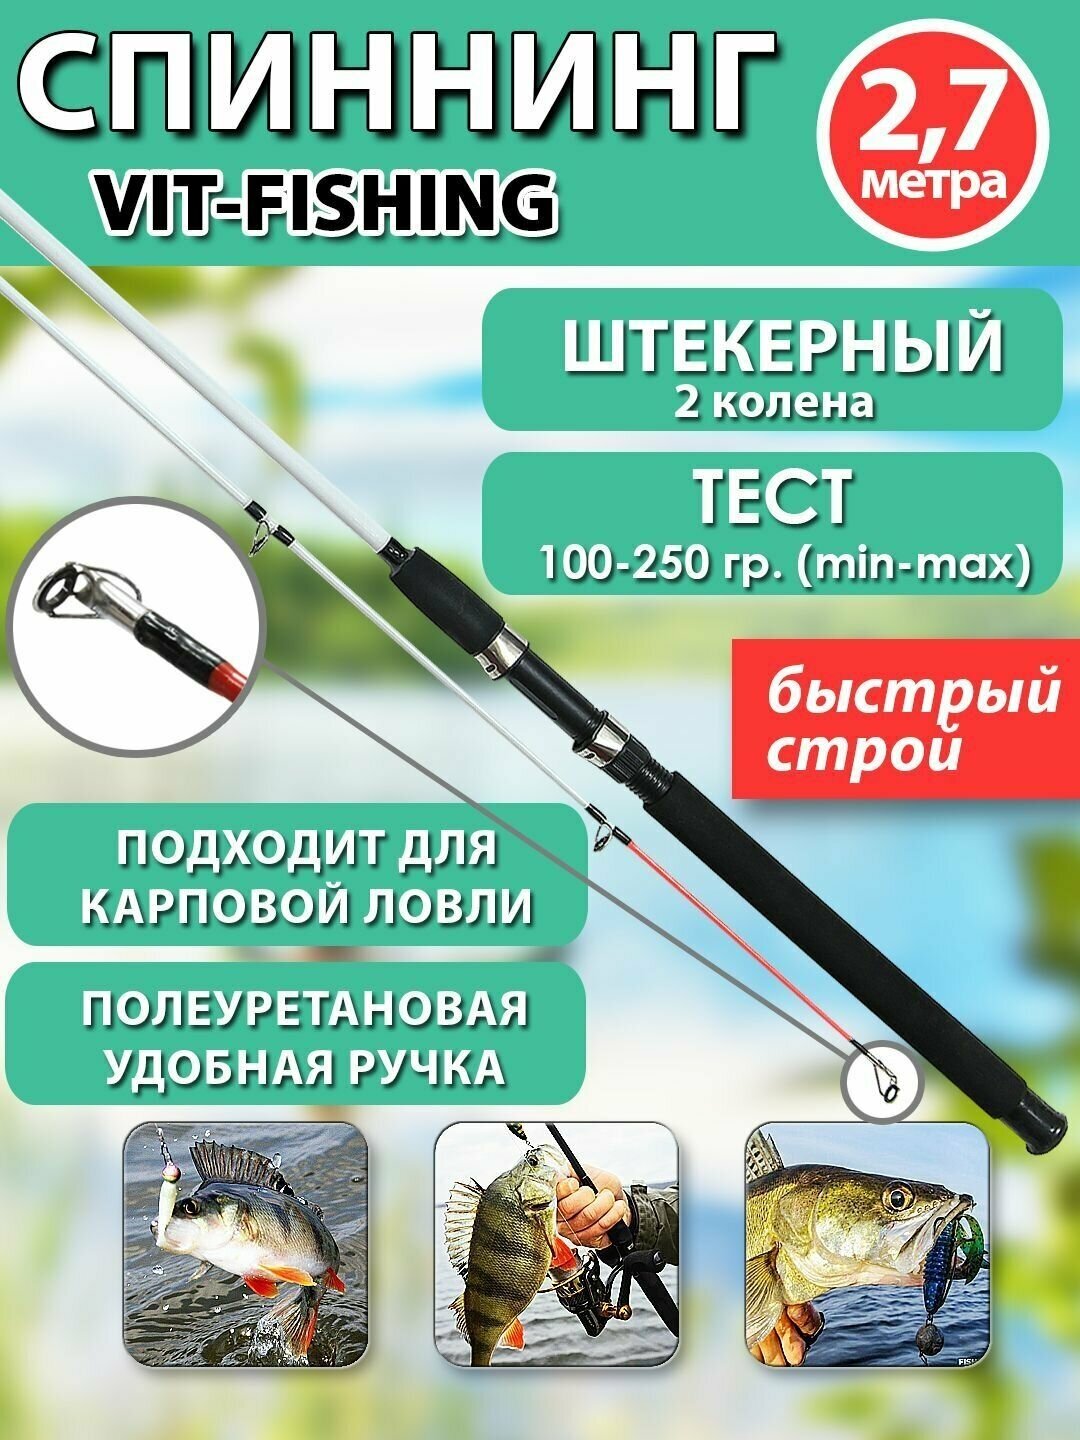 Спиннинг фидерный VITFISHING штекерный 2 колена 2.7 м для летней рыбалки черный быстрый строй тест 100-250